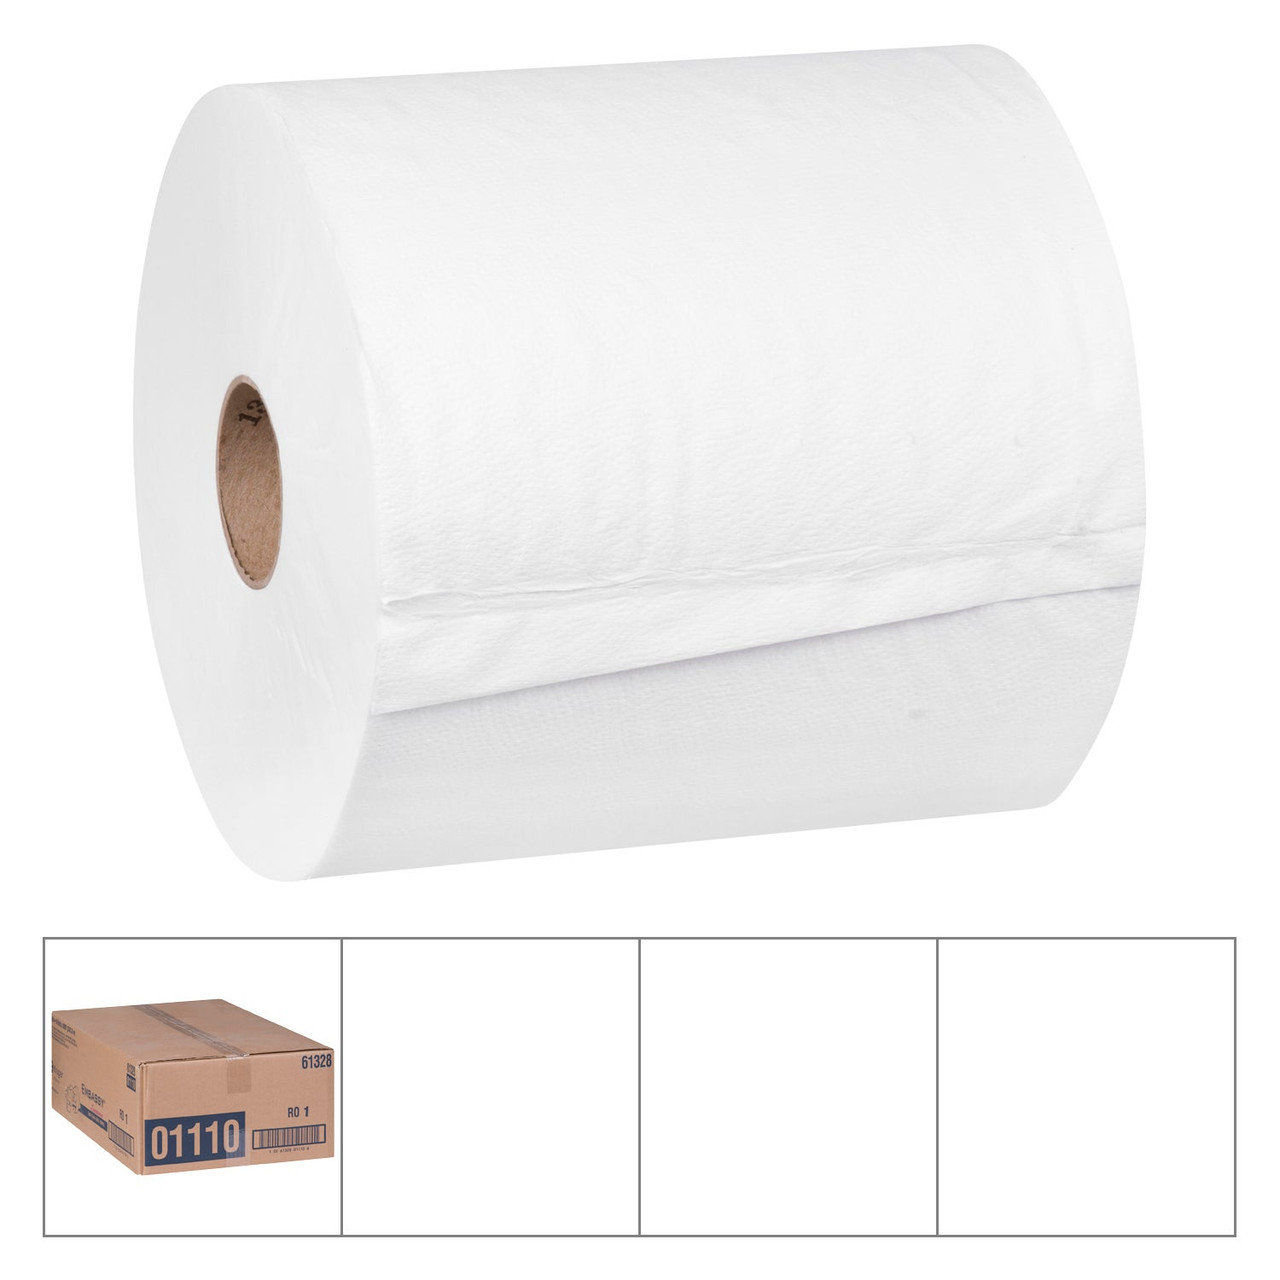 Embassy White Towel Rolls, 8In X 800Ft | 6UN/Unit, 1 Unit/Case